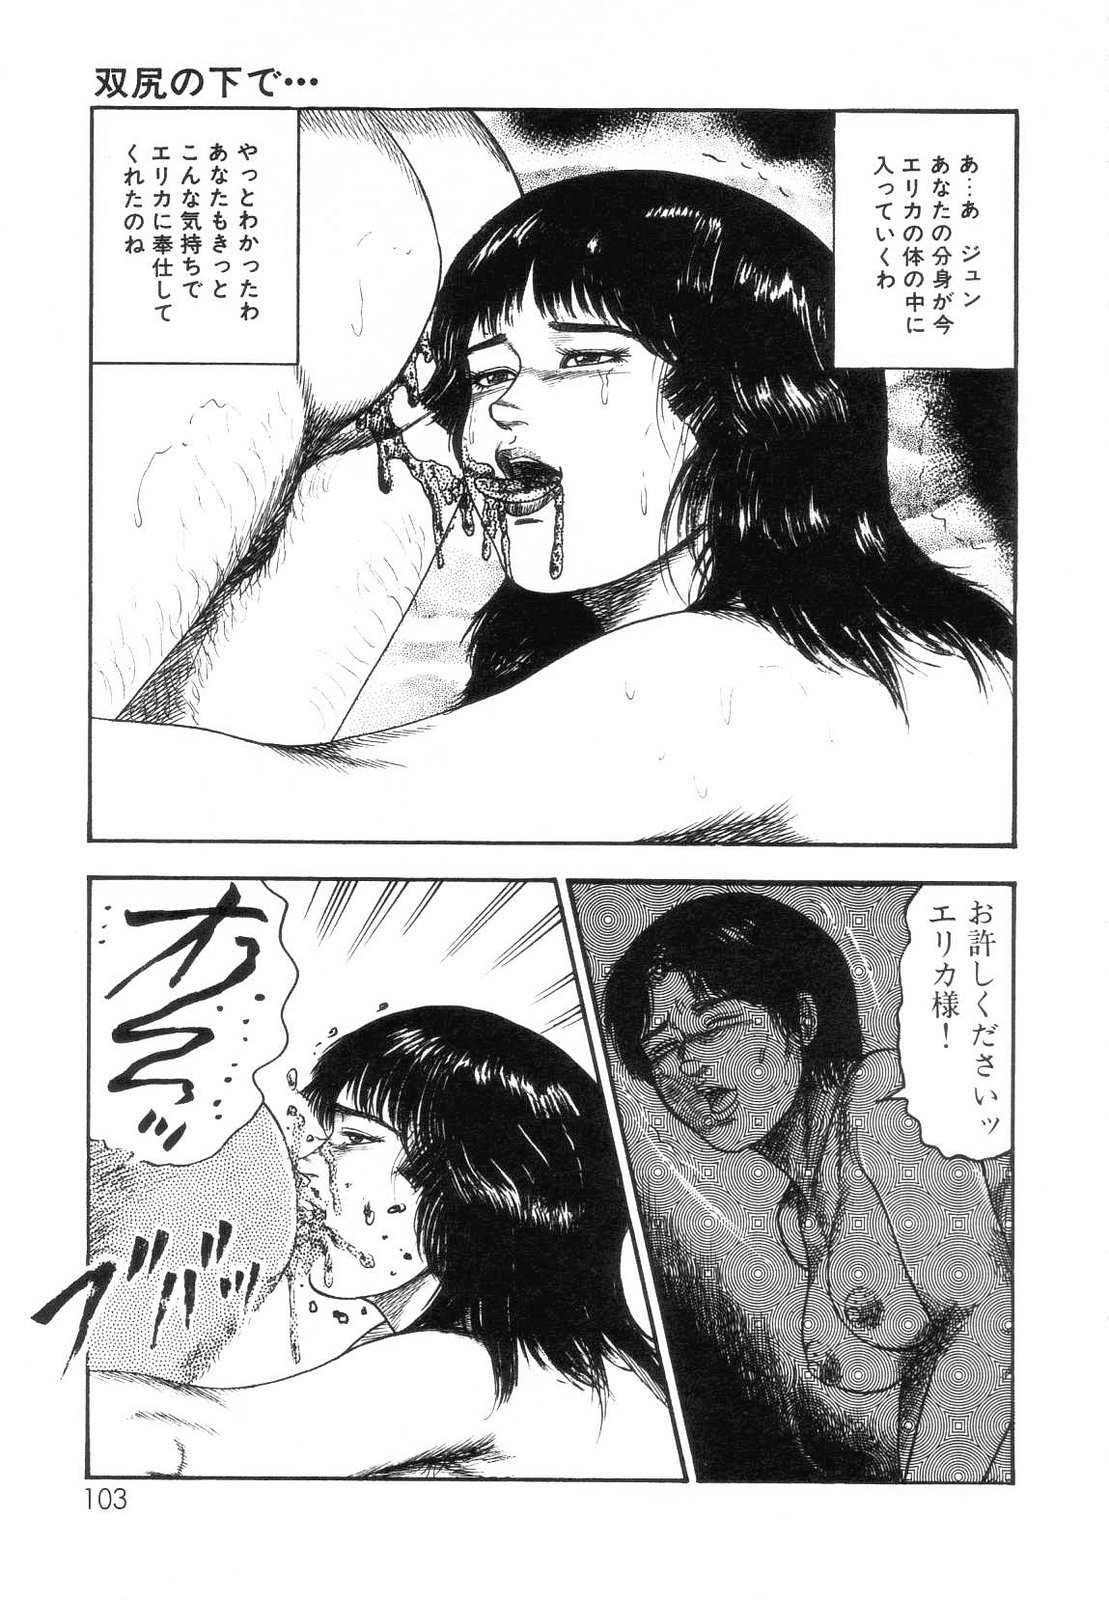 [Sanjou Tomomi] Shiro no Mokushiroku Vol. 7 - Shiiku Ningyou Erika no Shou 104